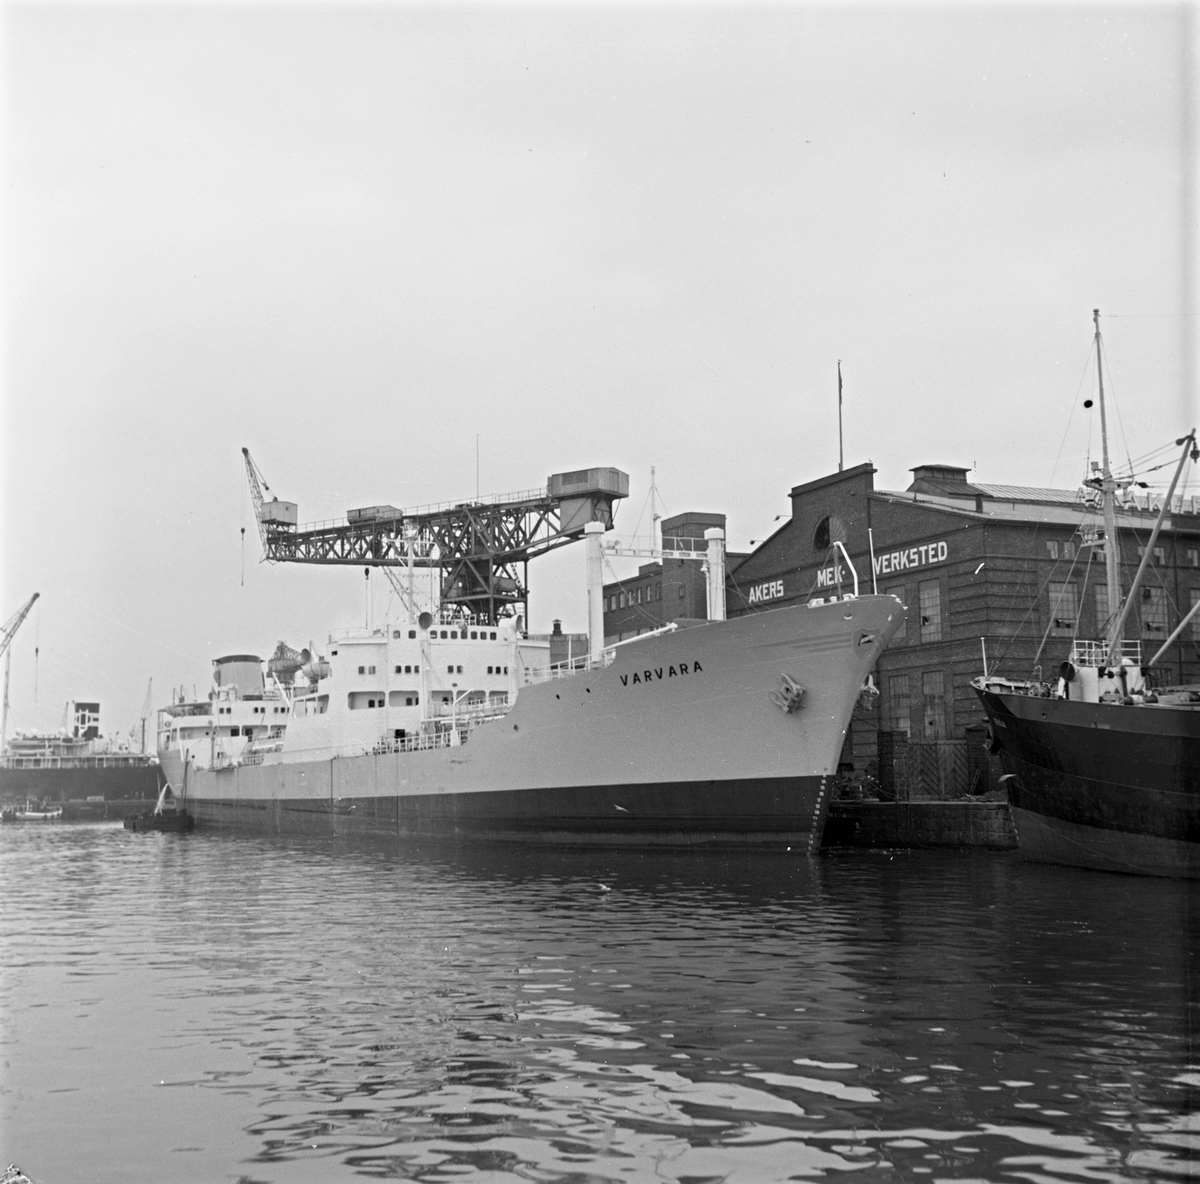 Serie. Tankskipet MS "Varvara" ligger til kai ved Akers. Mek. Verksted. Fotografert august 1955.